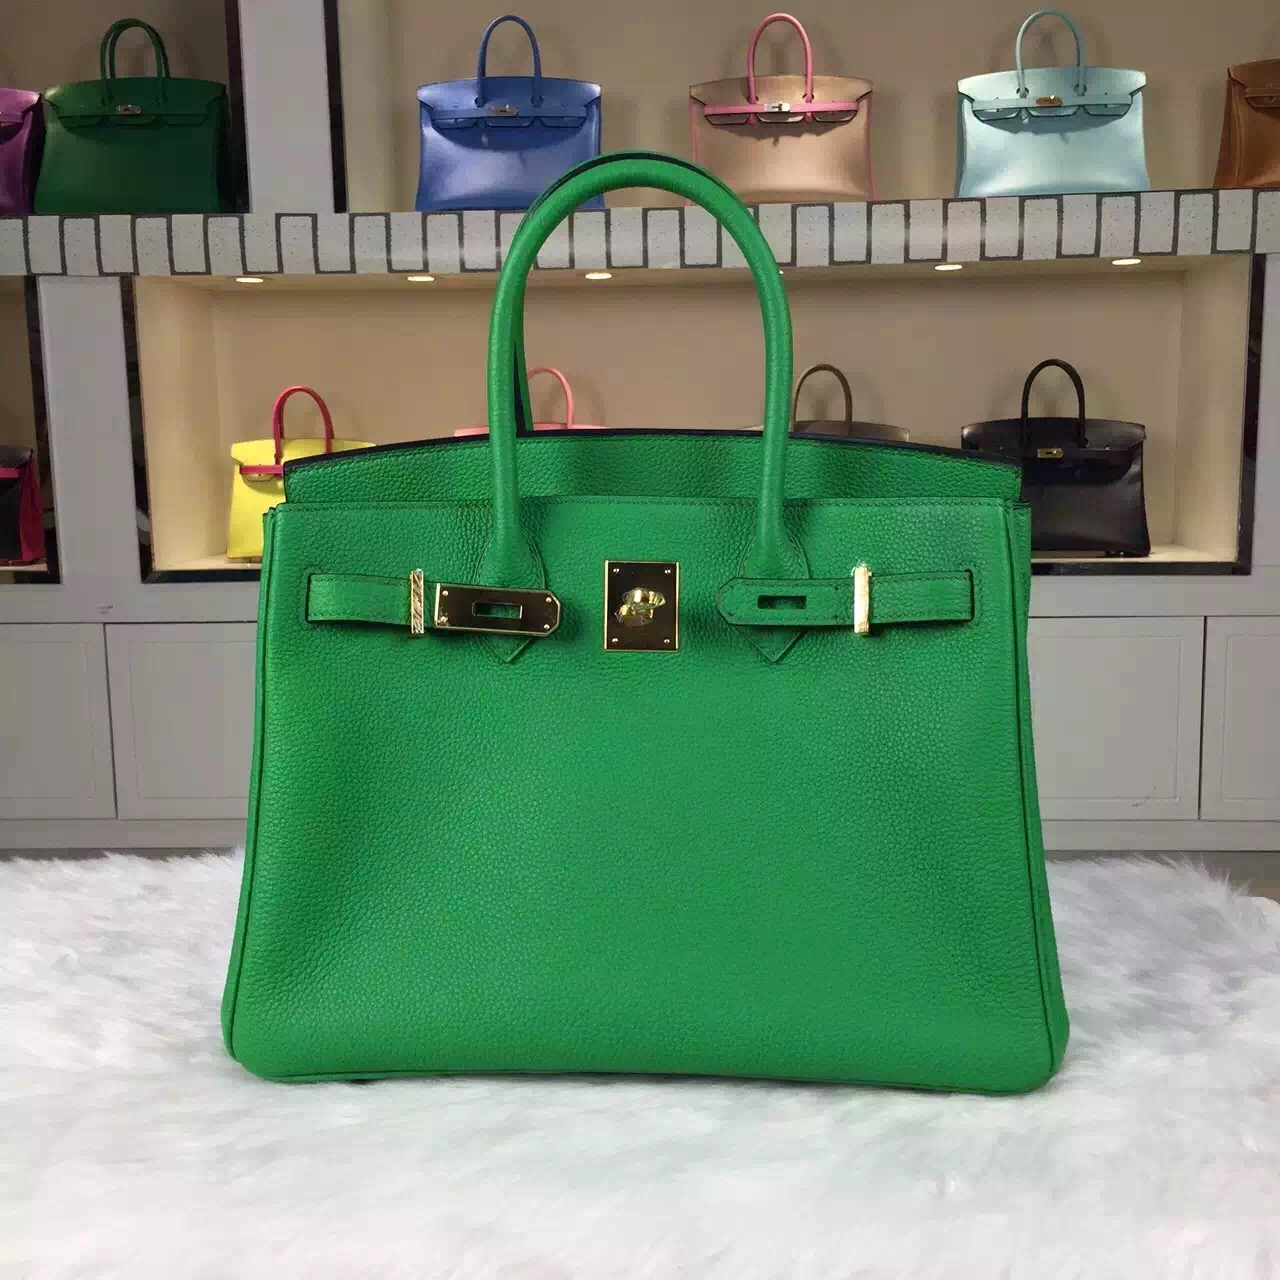 New Fashion Hermes France Togo Calfskin Leather Birkin Bag 30cm in 1K Bamboo Green